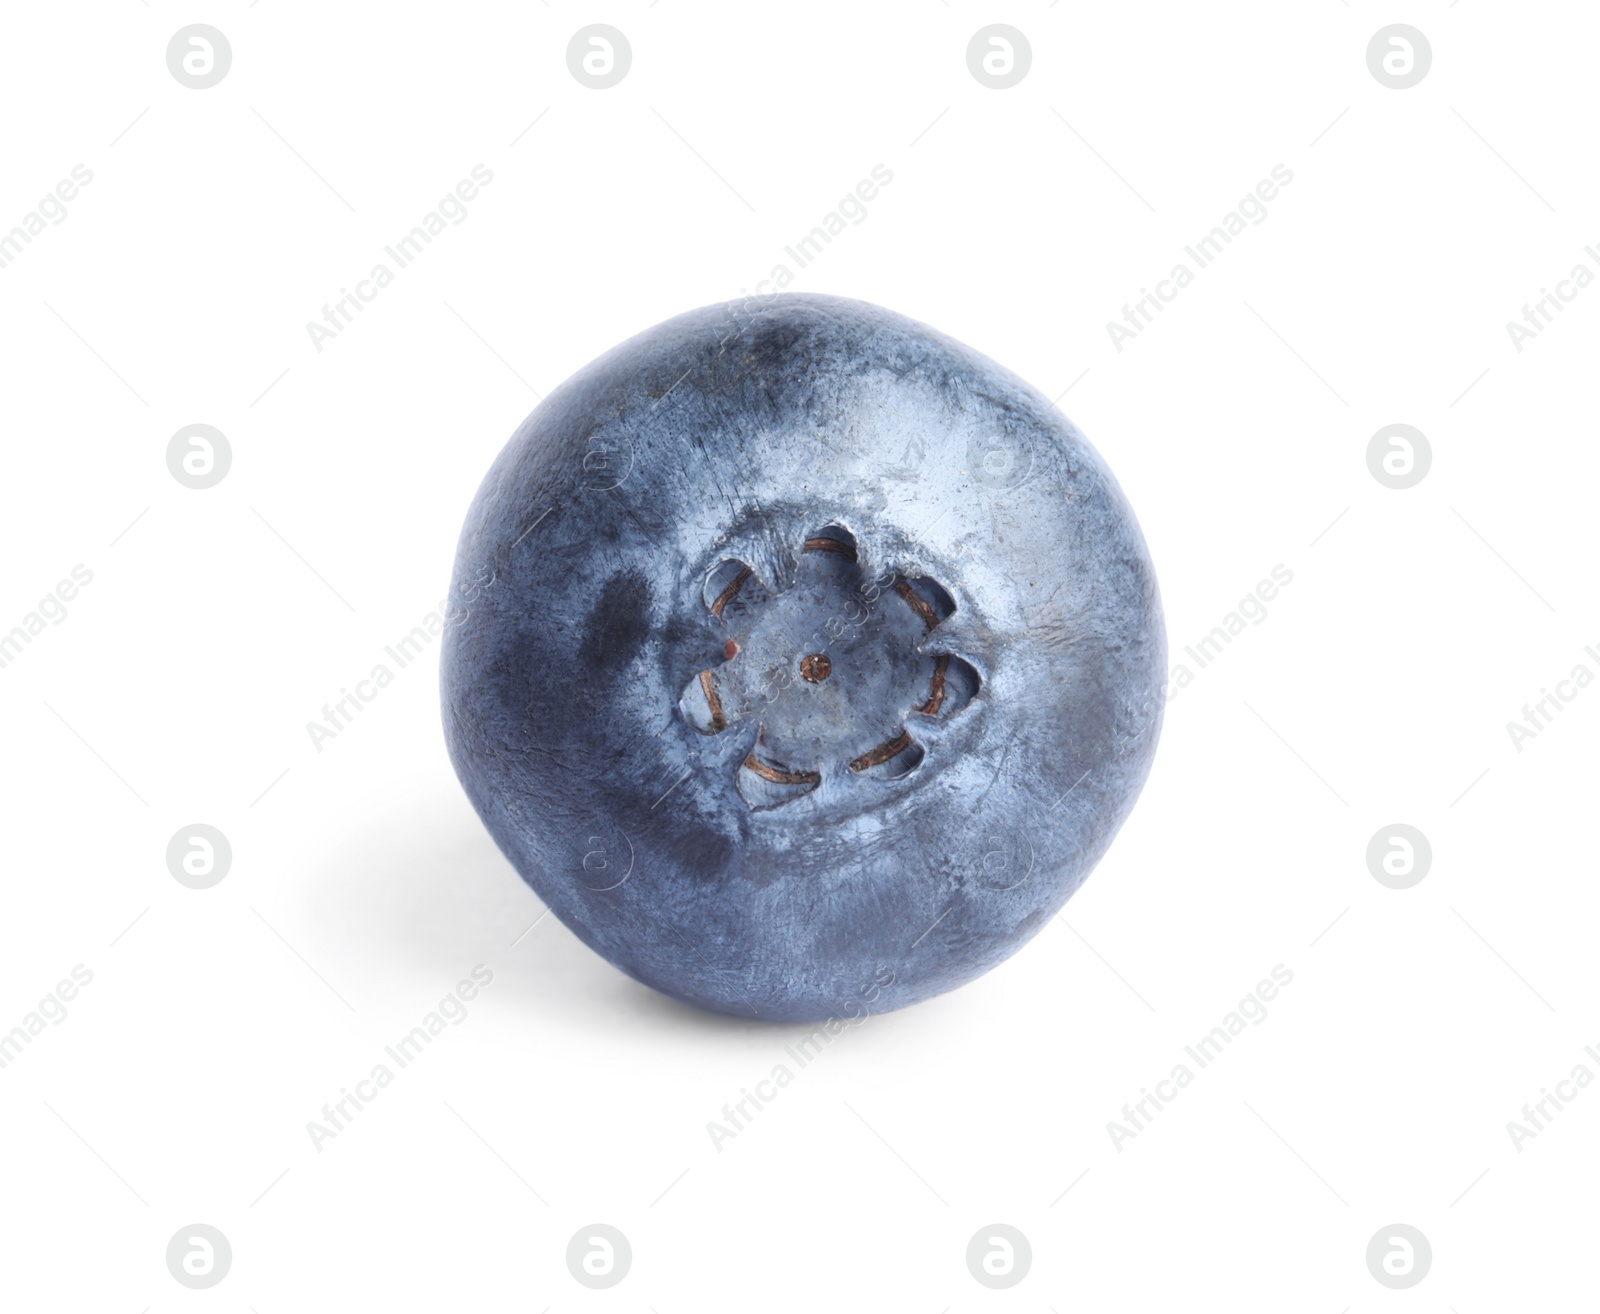 Photo of Fresh ripe tasty blueberry isolated on white